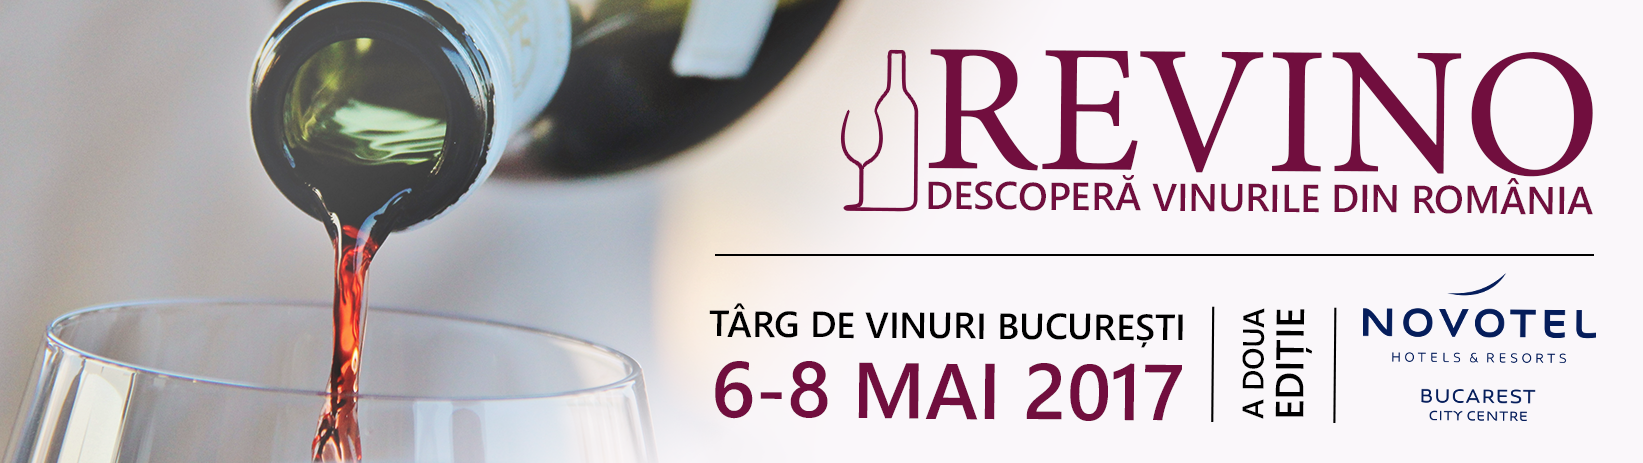 Salon de vinuri ReVino - Descopera vinurile din Romania